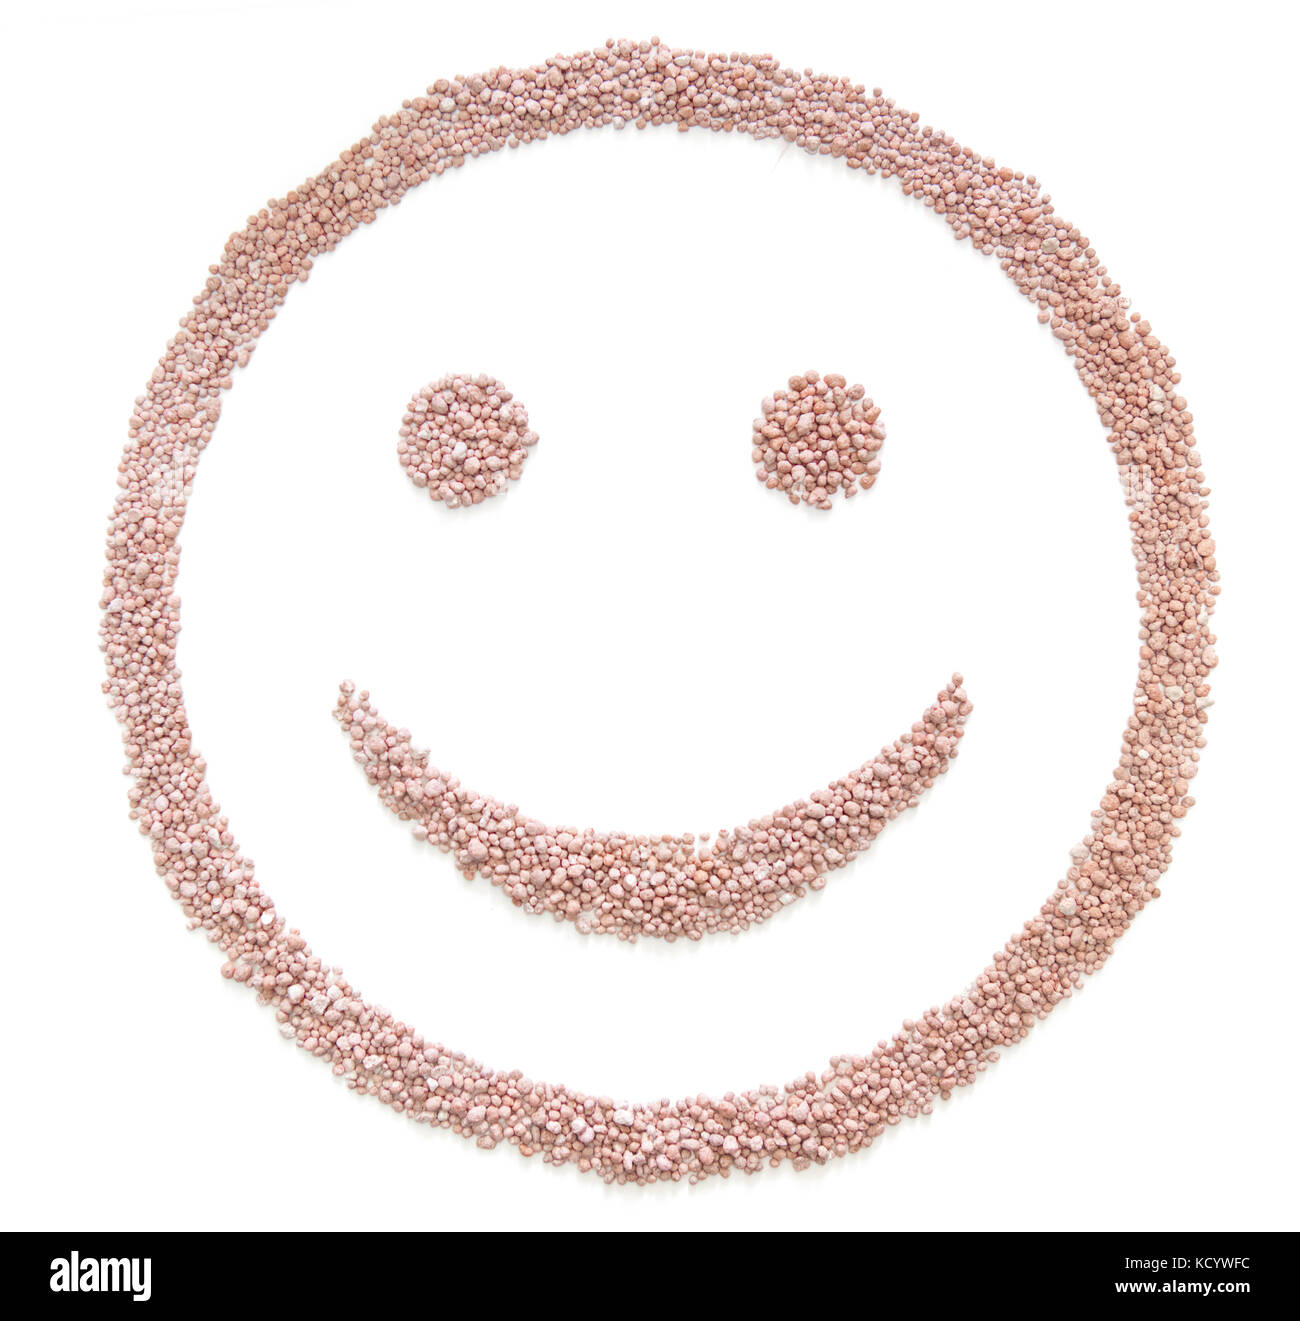 Semences d'engrais en forme sourire isolated on white Banque D'Images